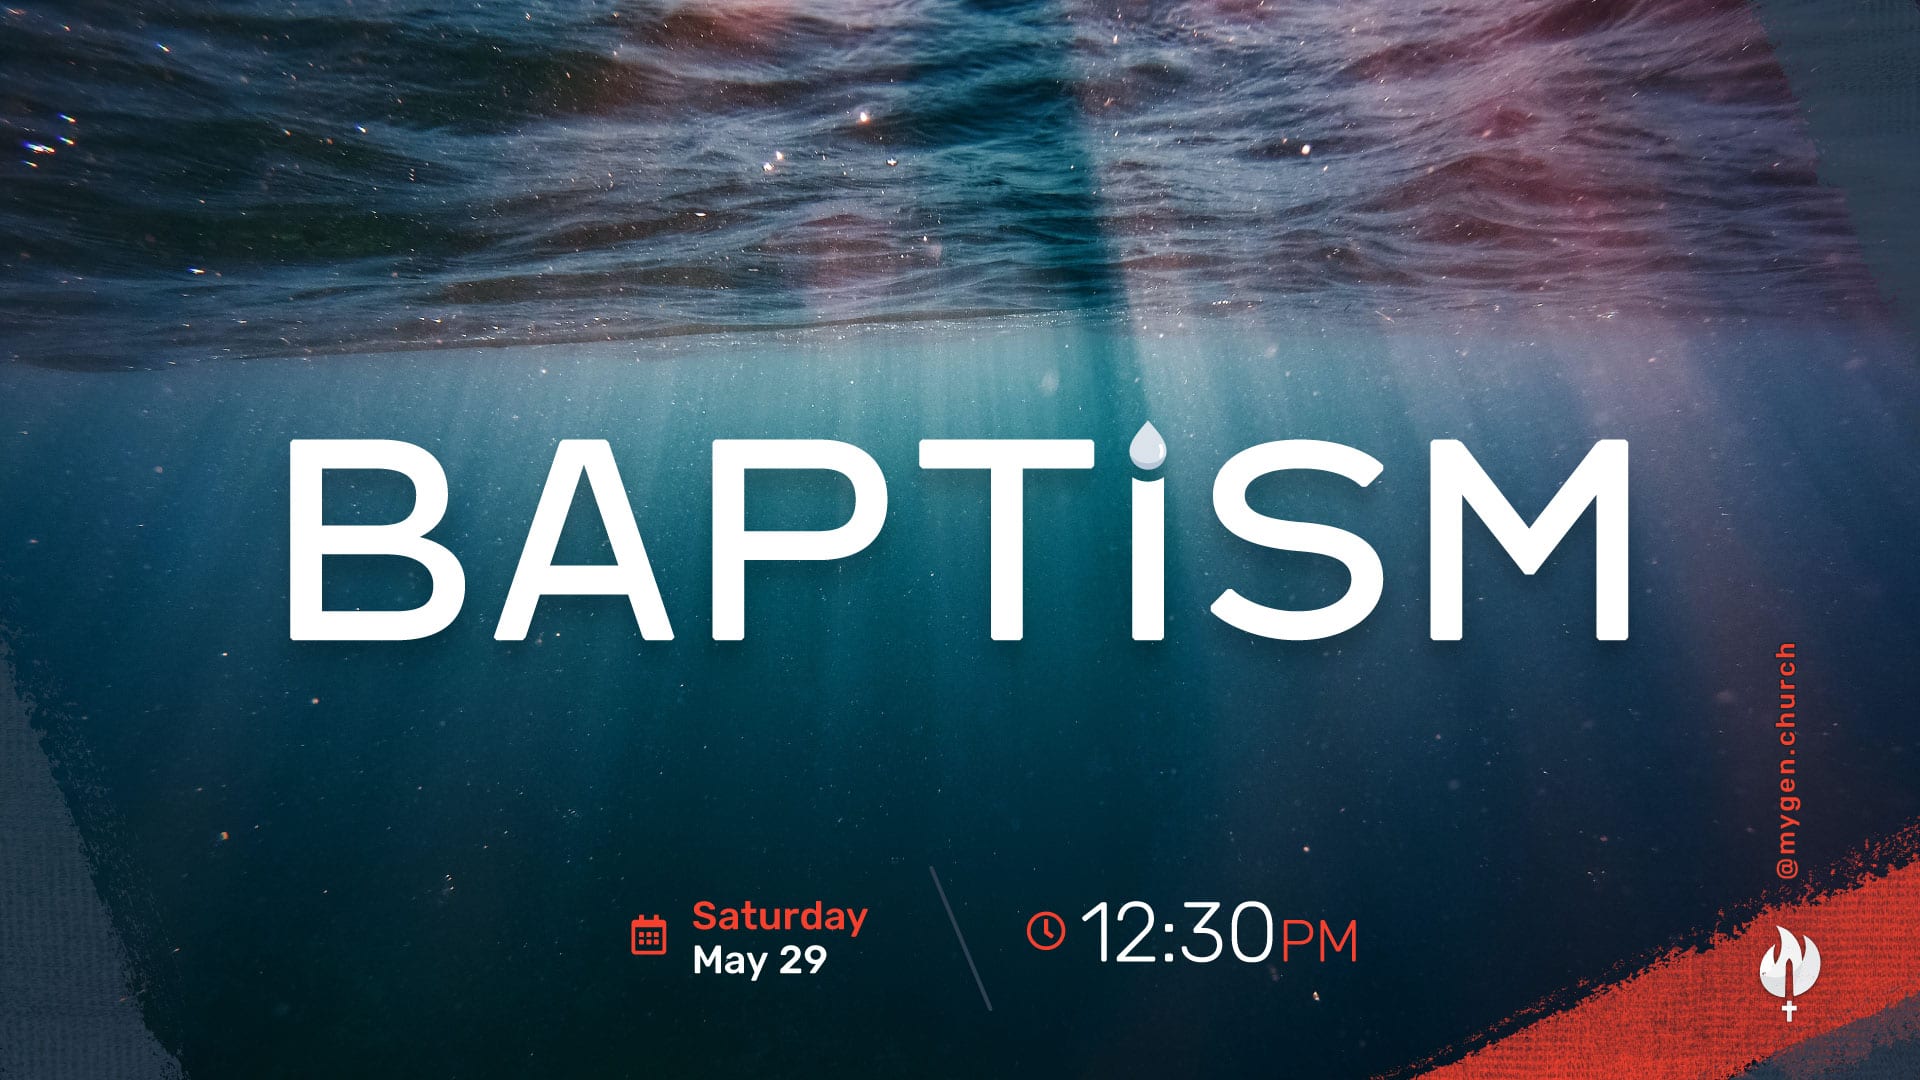 Baptism at MyGeneration Church on May 29, 2021